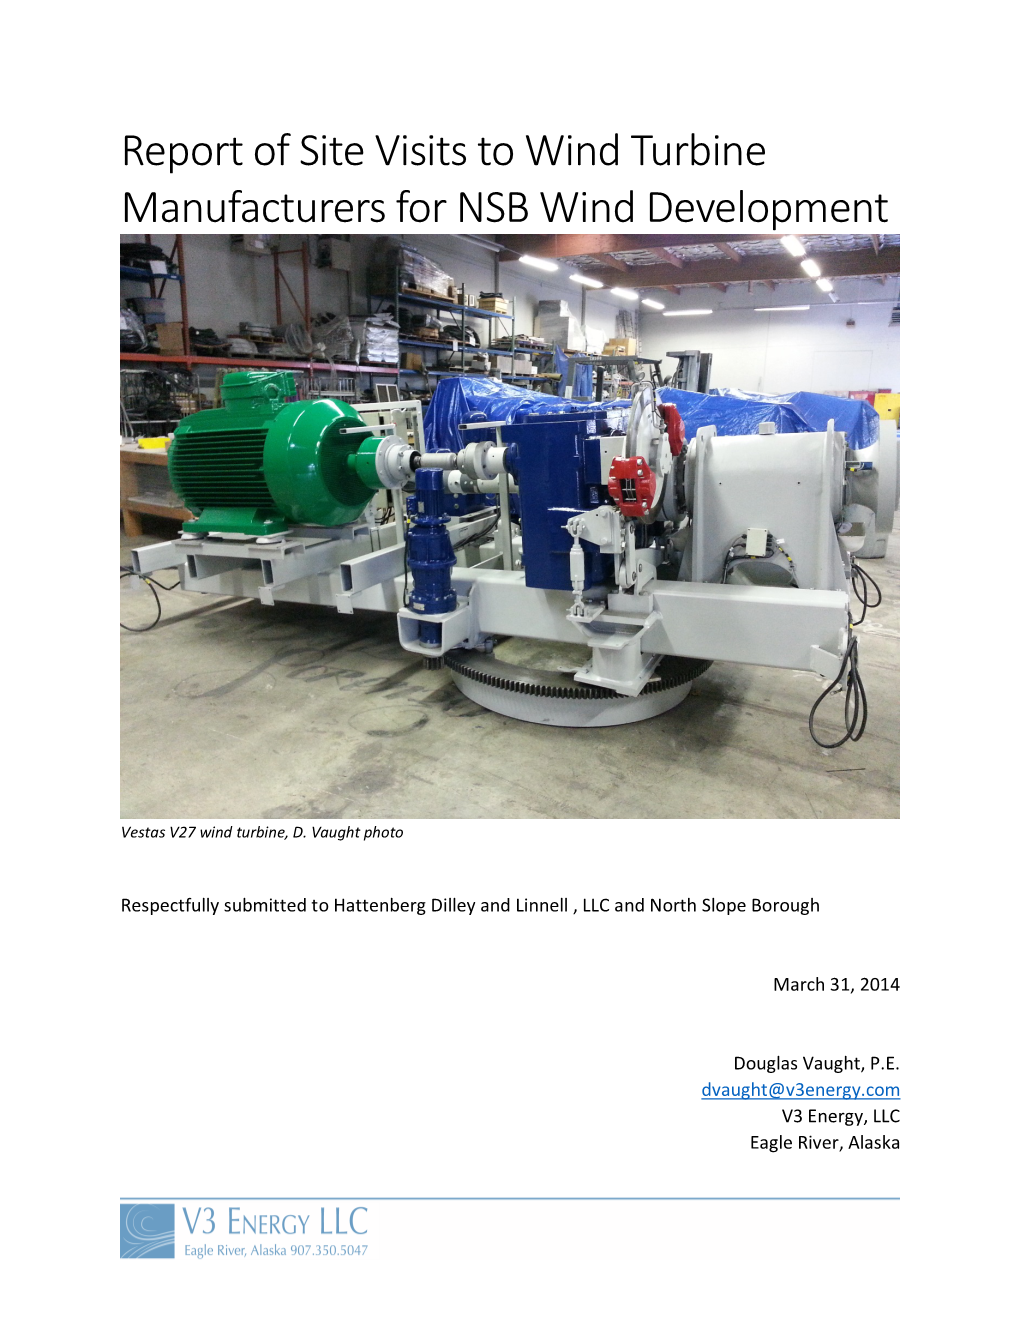 Wind Turbine Mfg. Report